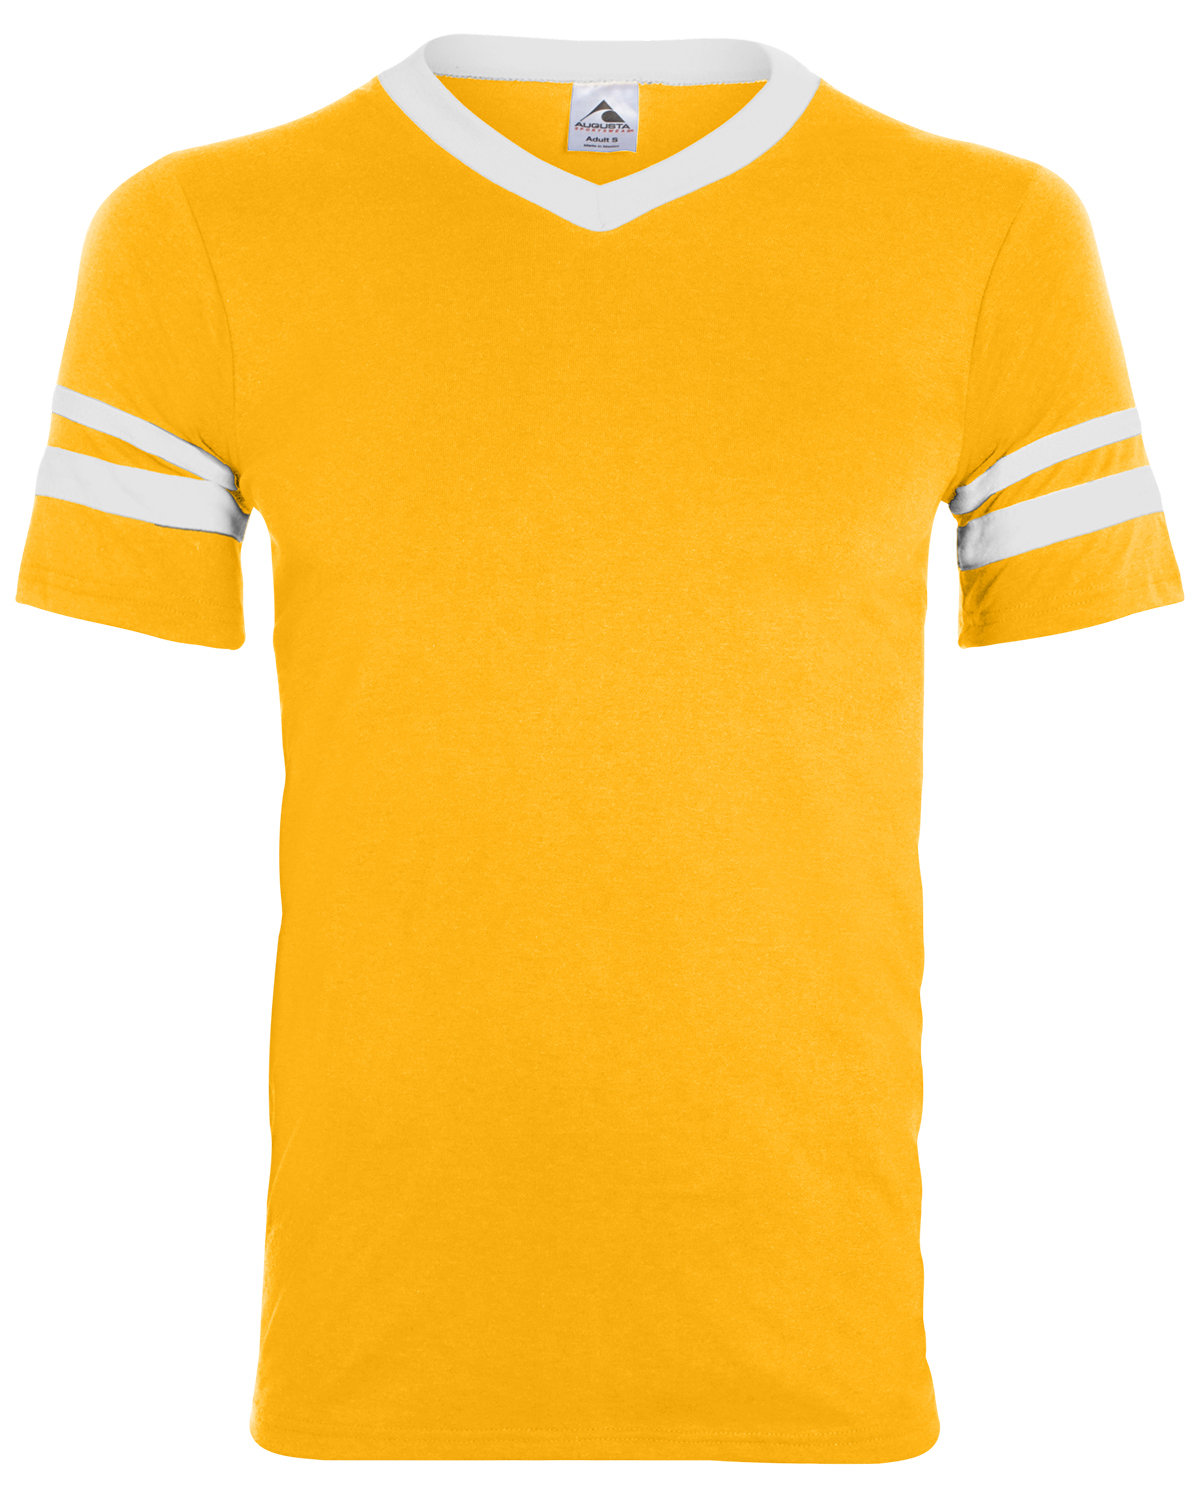 Augusta Sportswear Adult Sleeve Stripe Jersey GOLD/ WHITE 